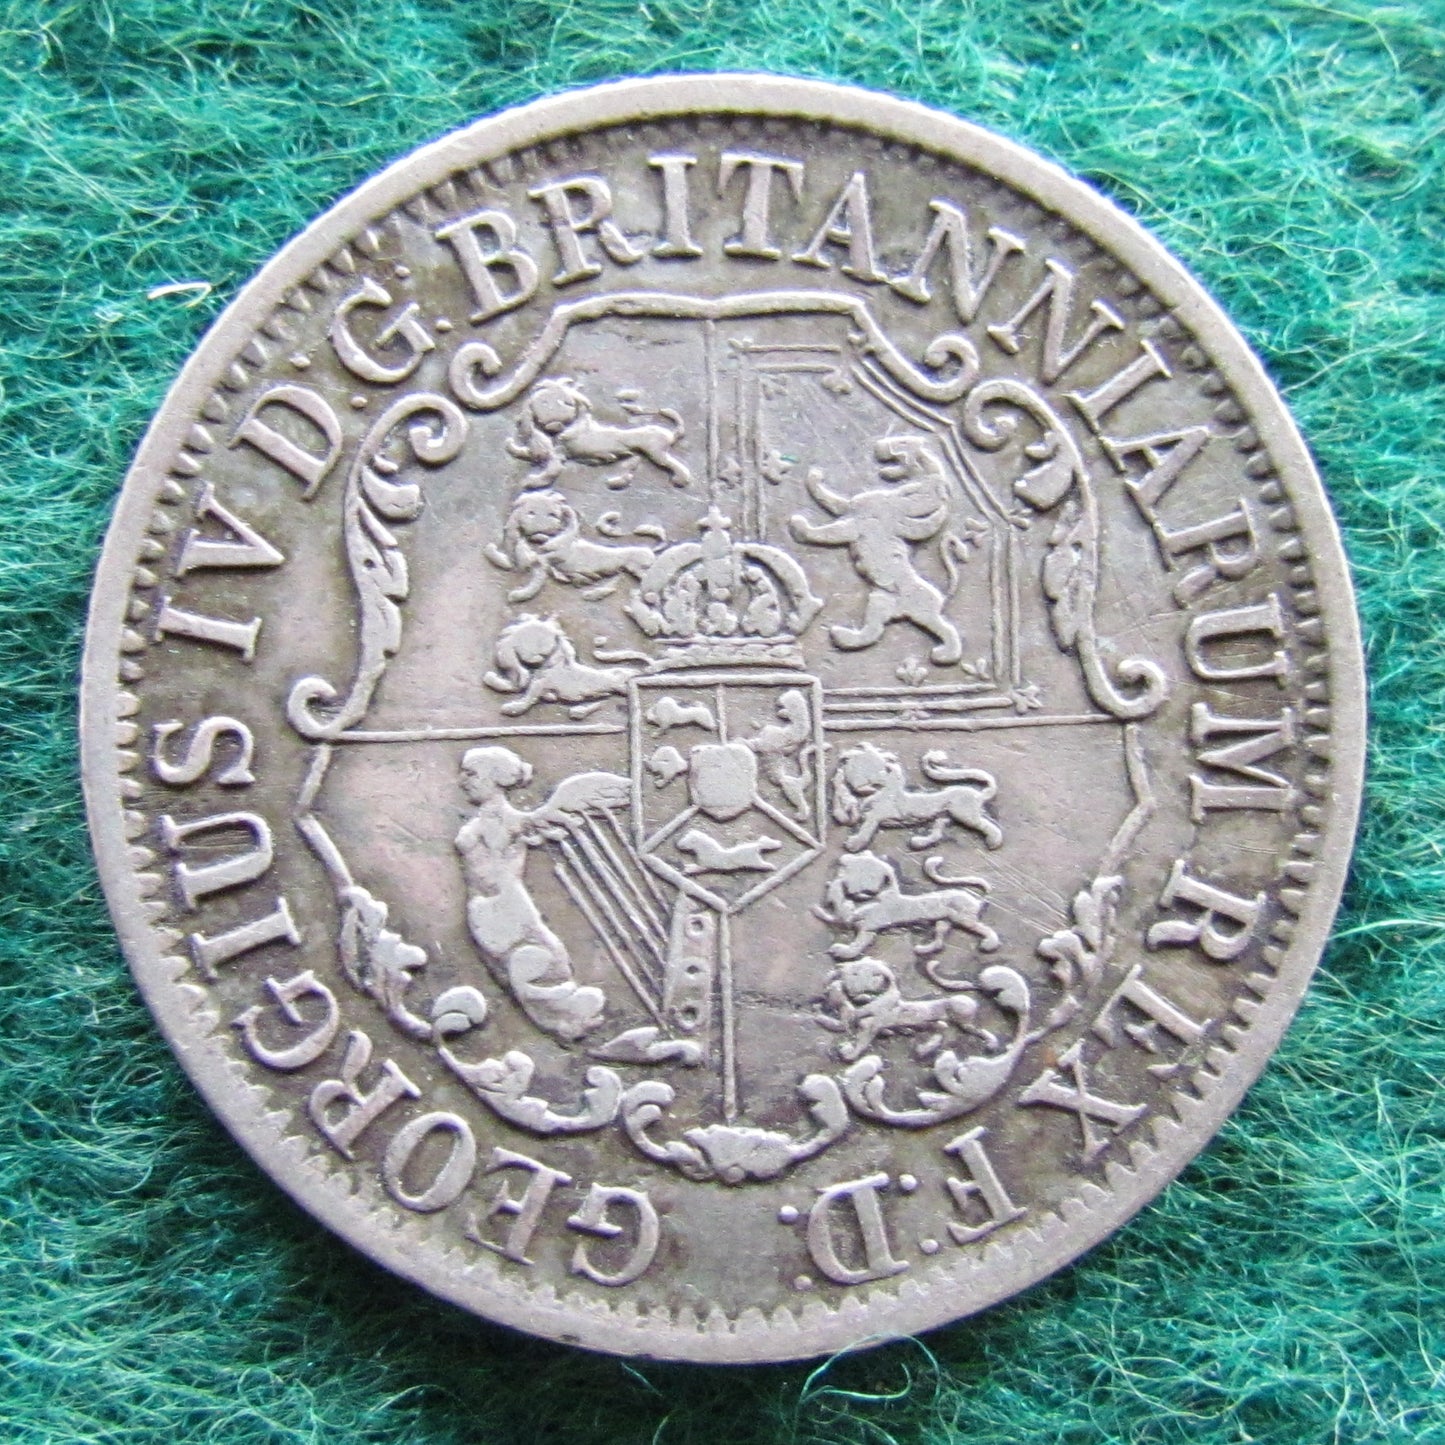 British West Indies 1822 Anchor Money 1/4 Dollar Silver Coin Quarter Dollar Coin